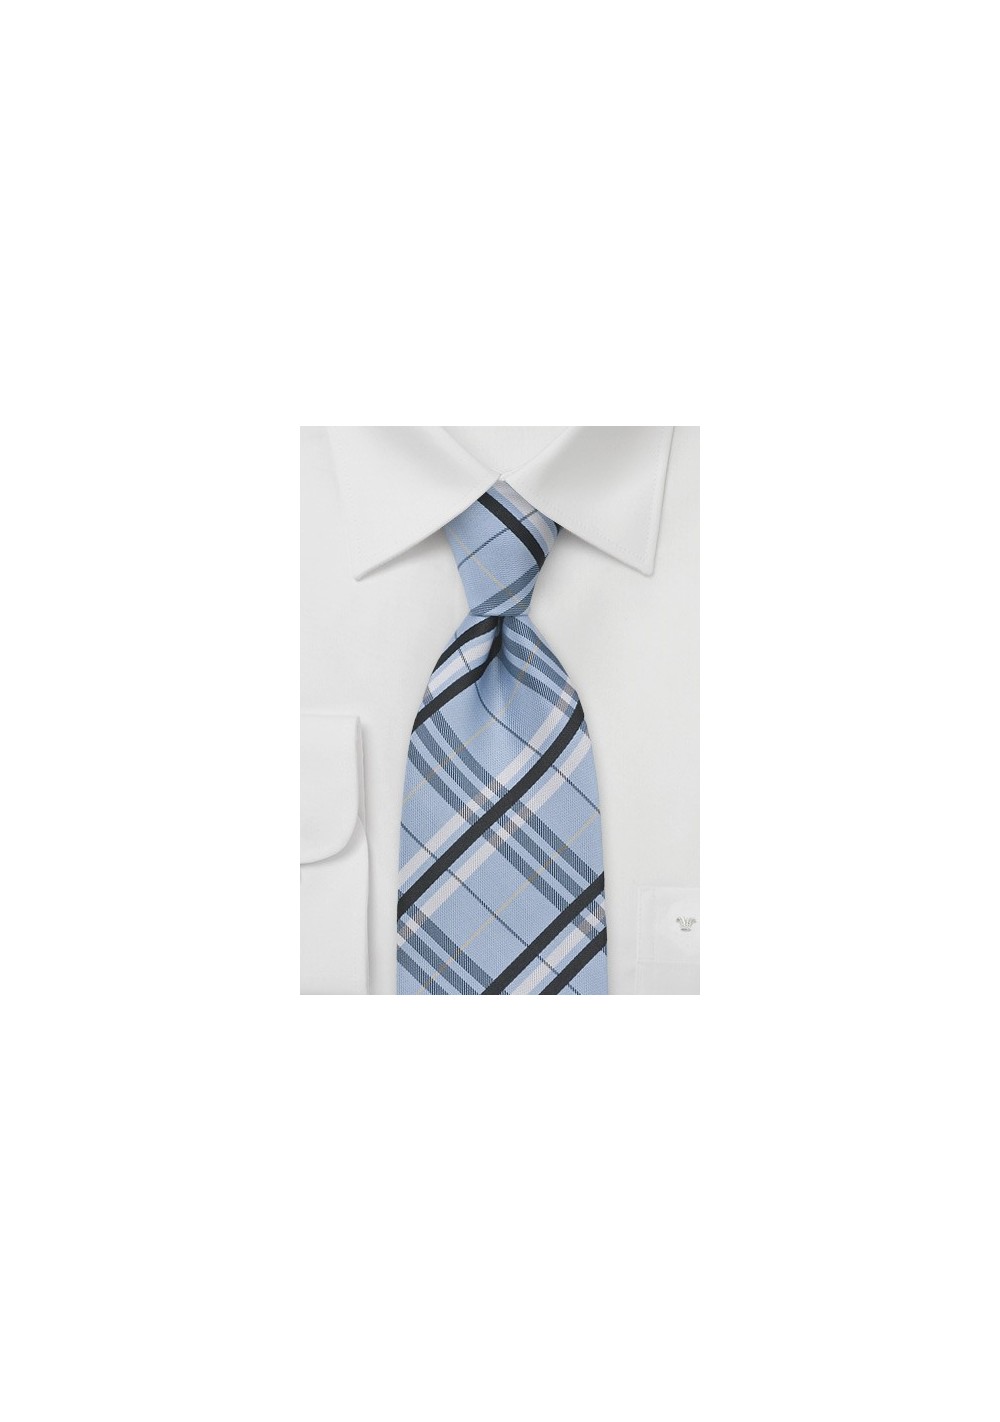 Plaid Tie in Pool Blue